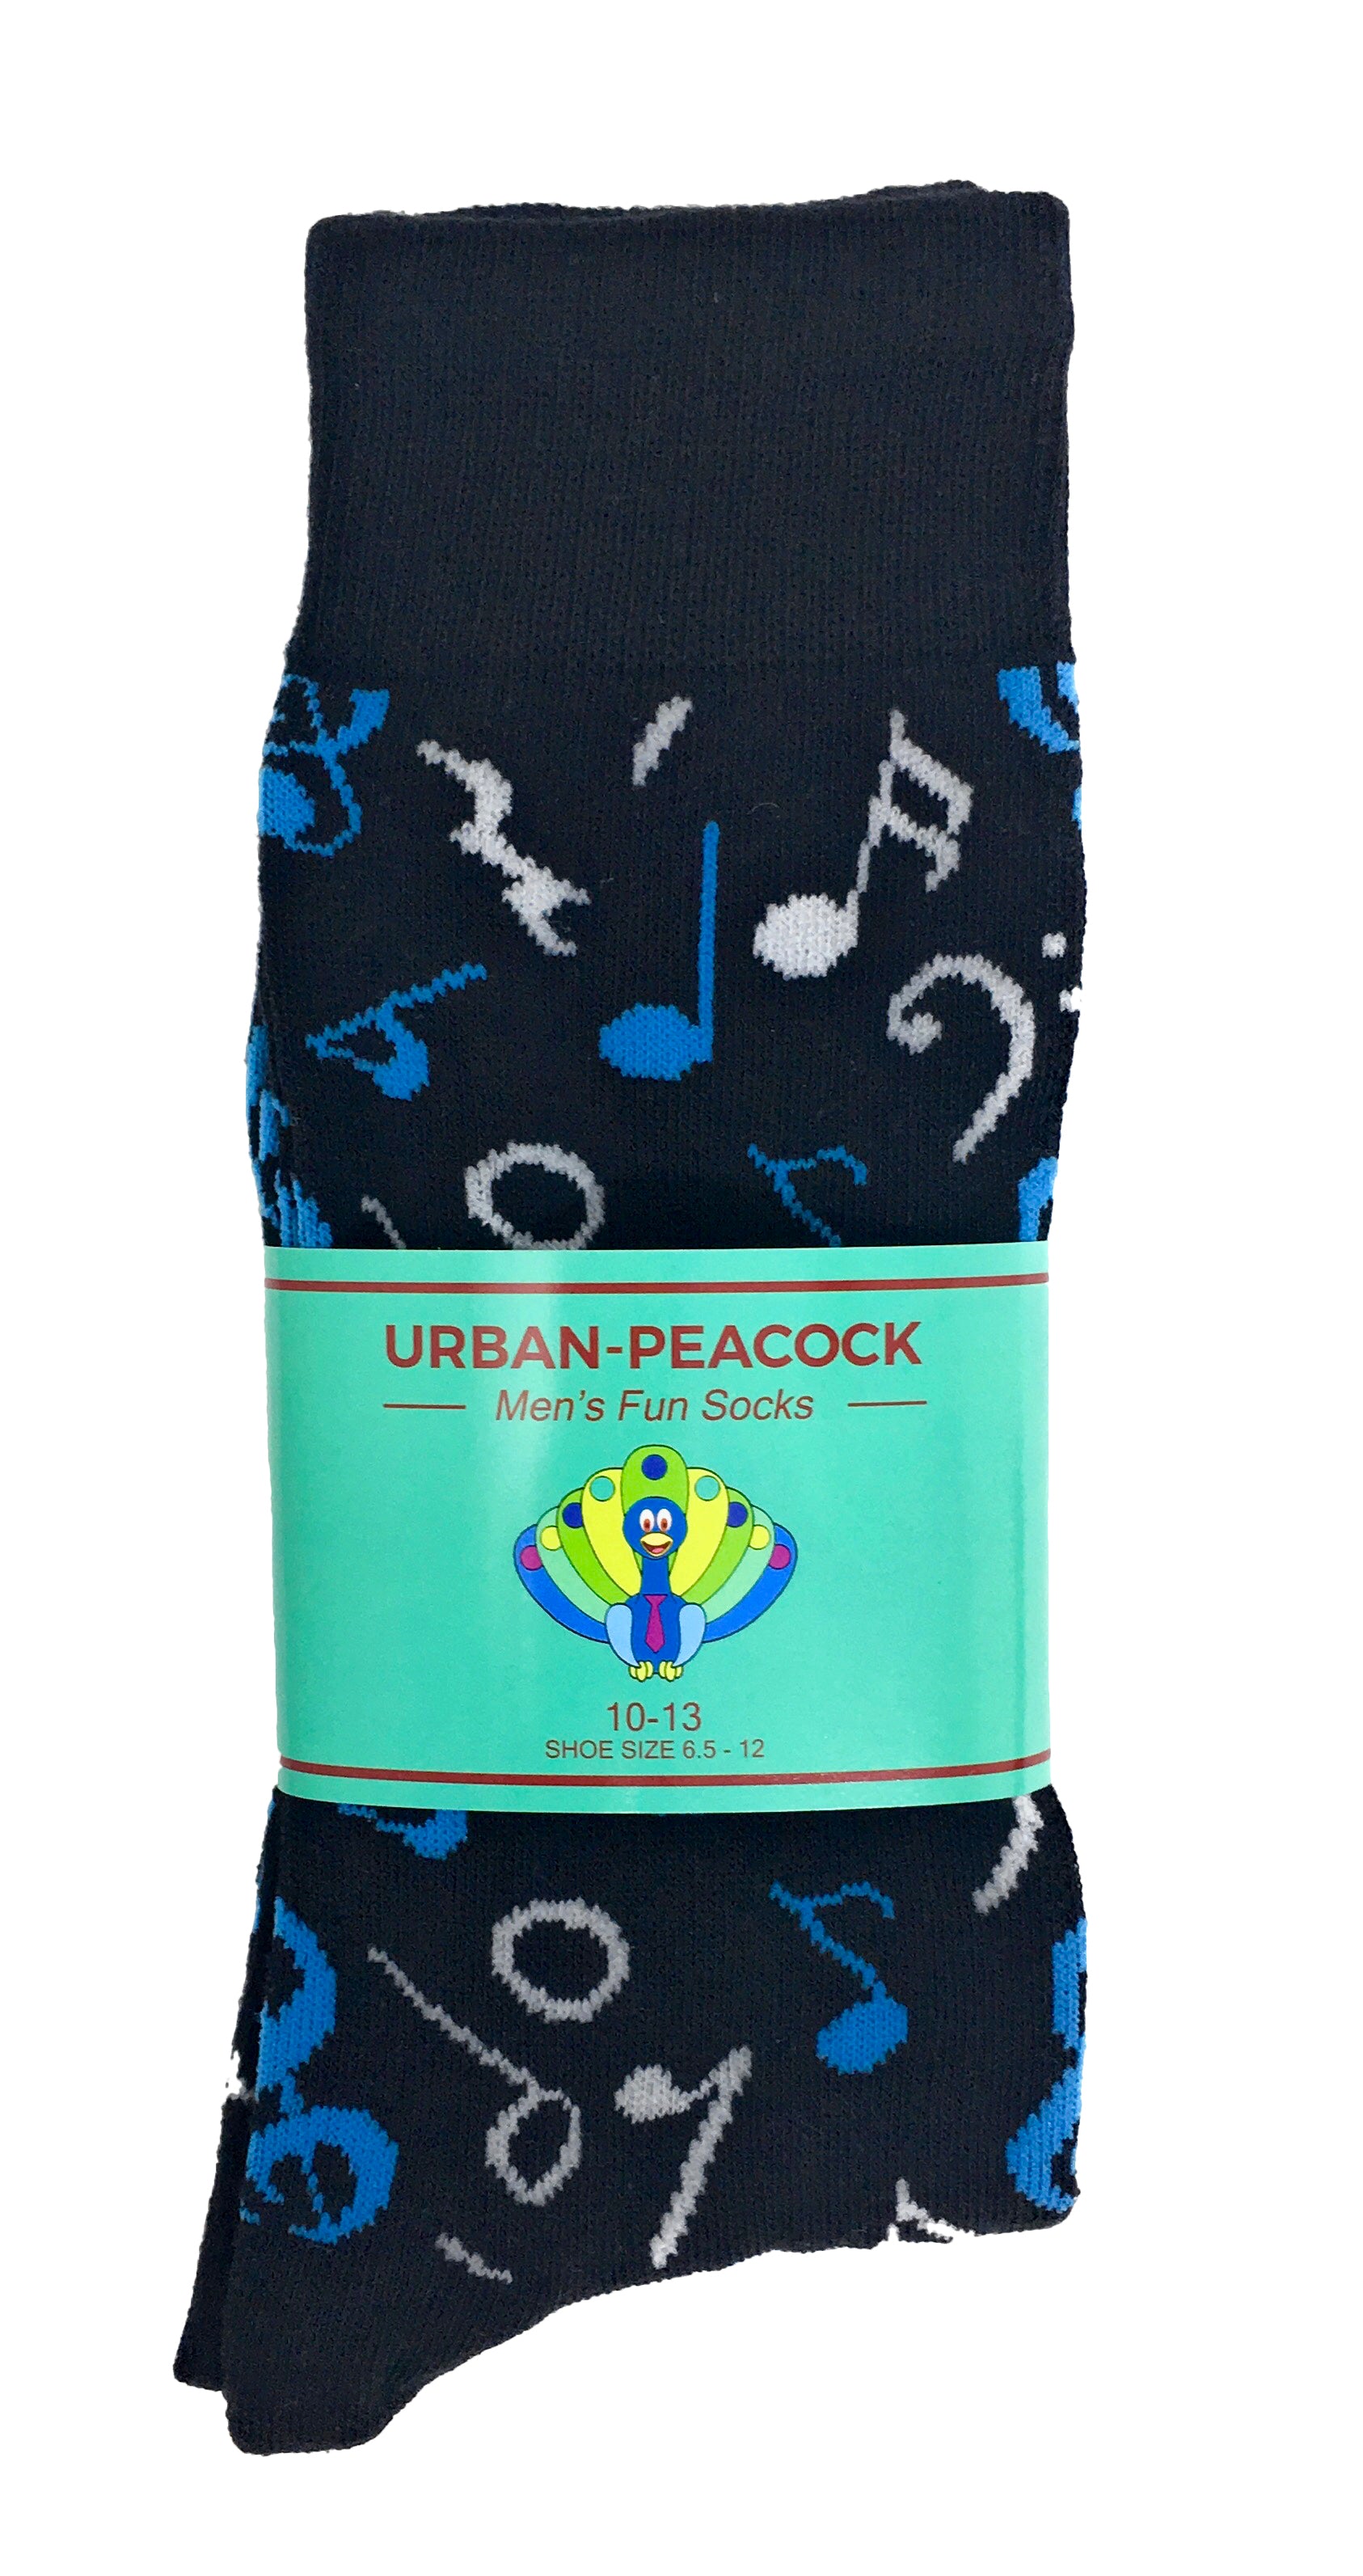 Urban-Peacock Men's Novelty Crew Socks - Music Notes - Black